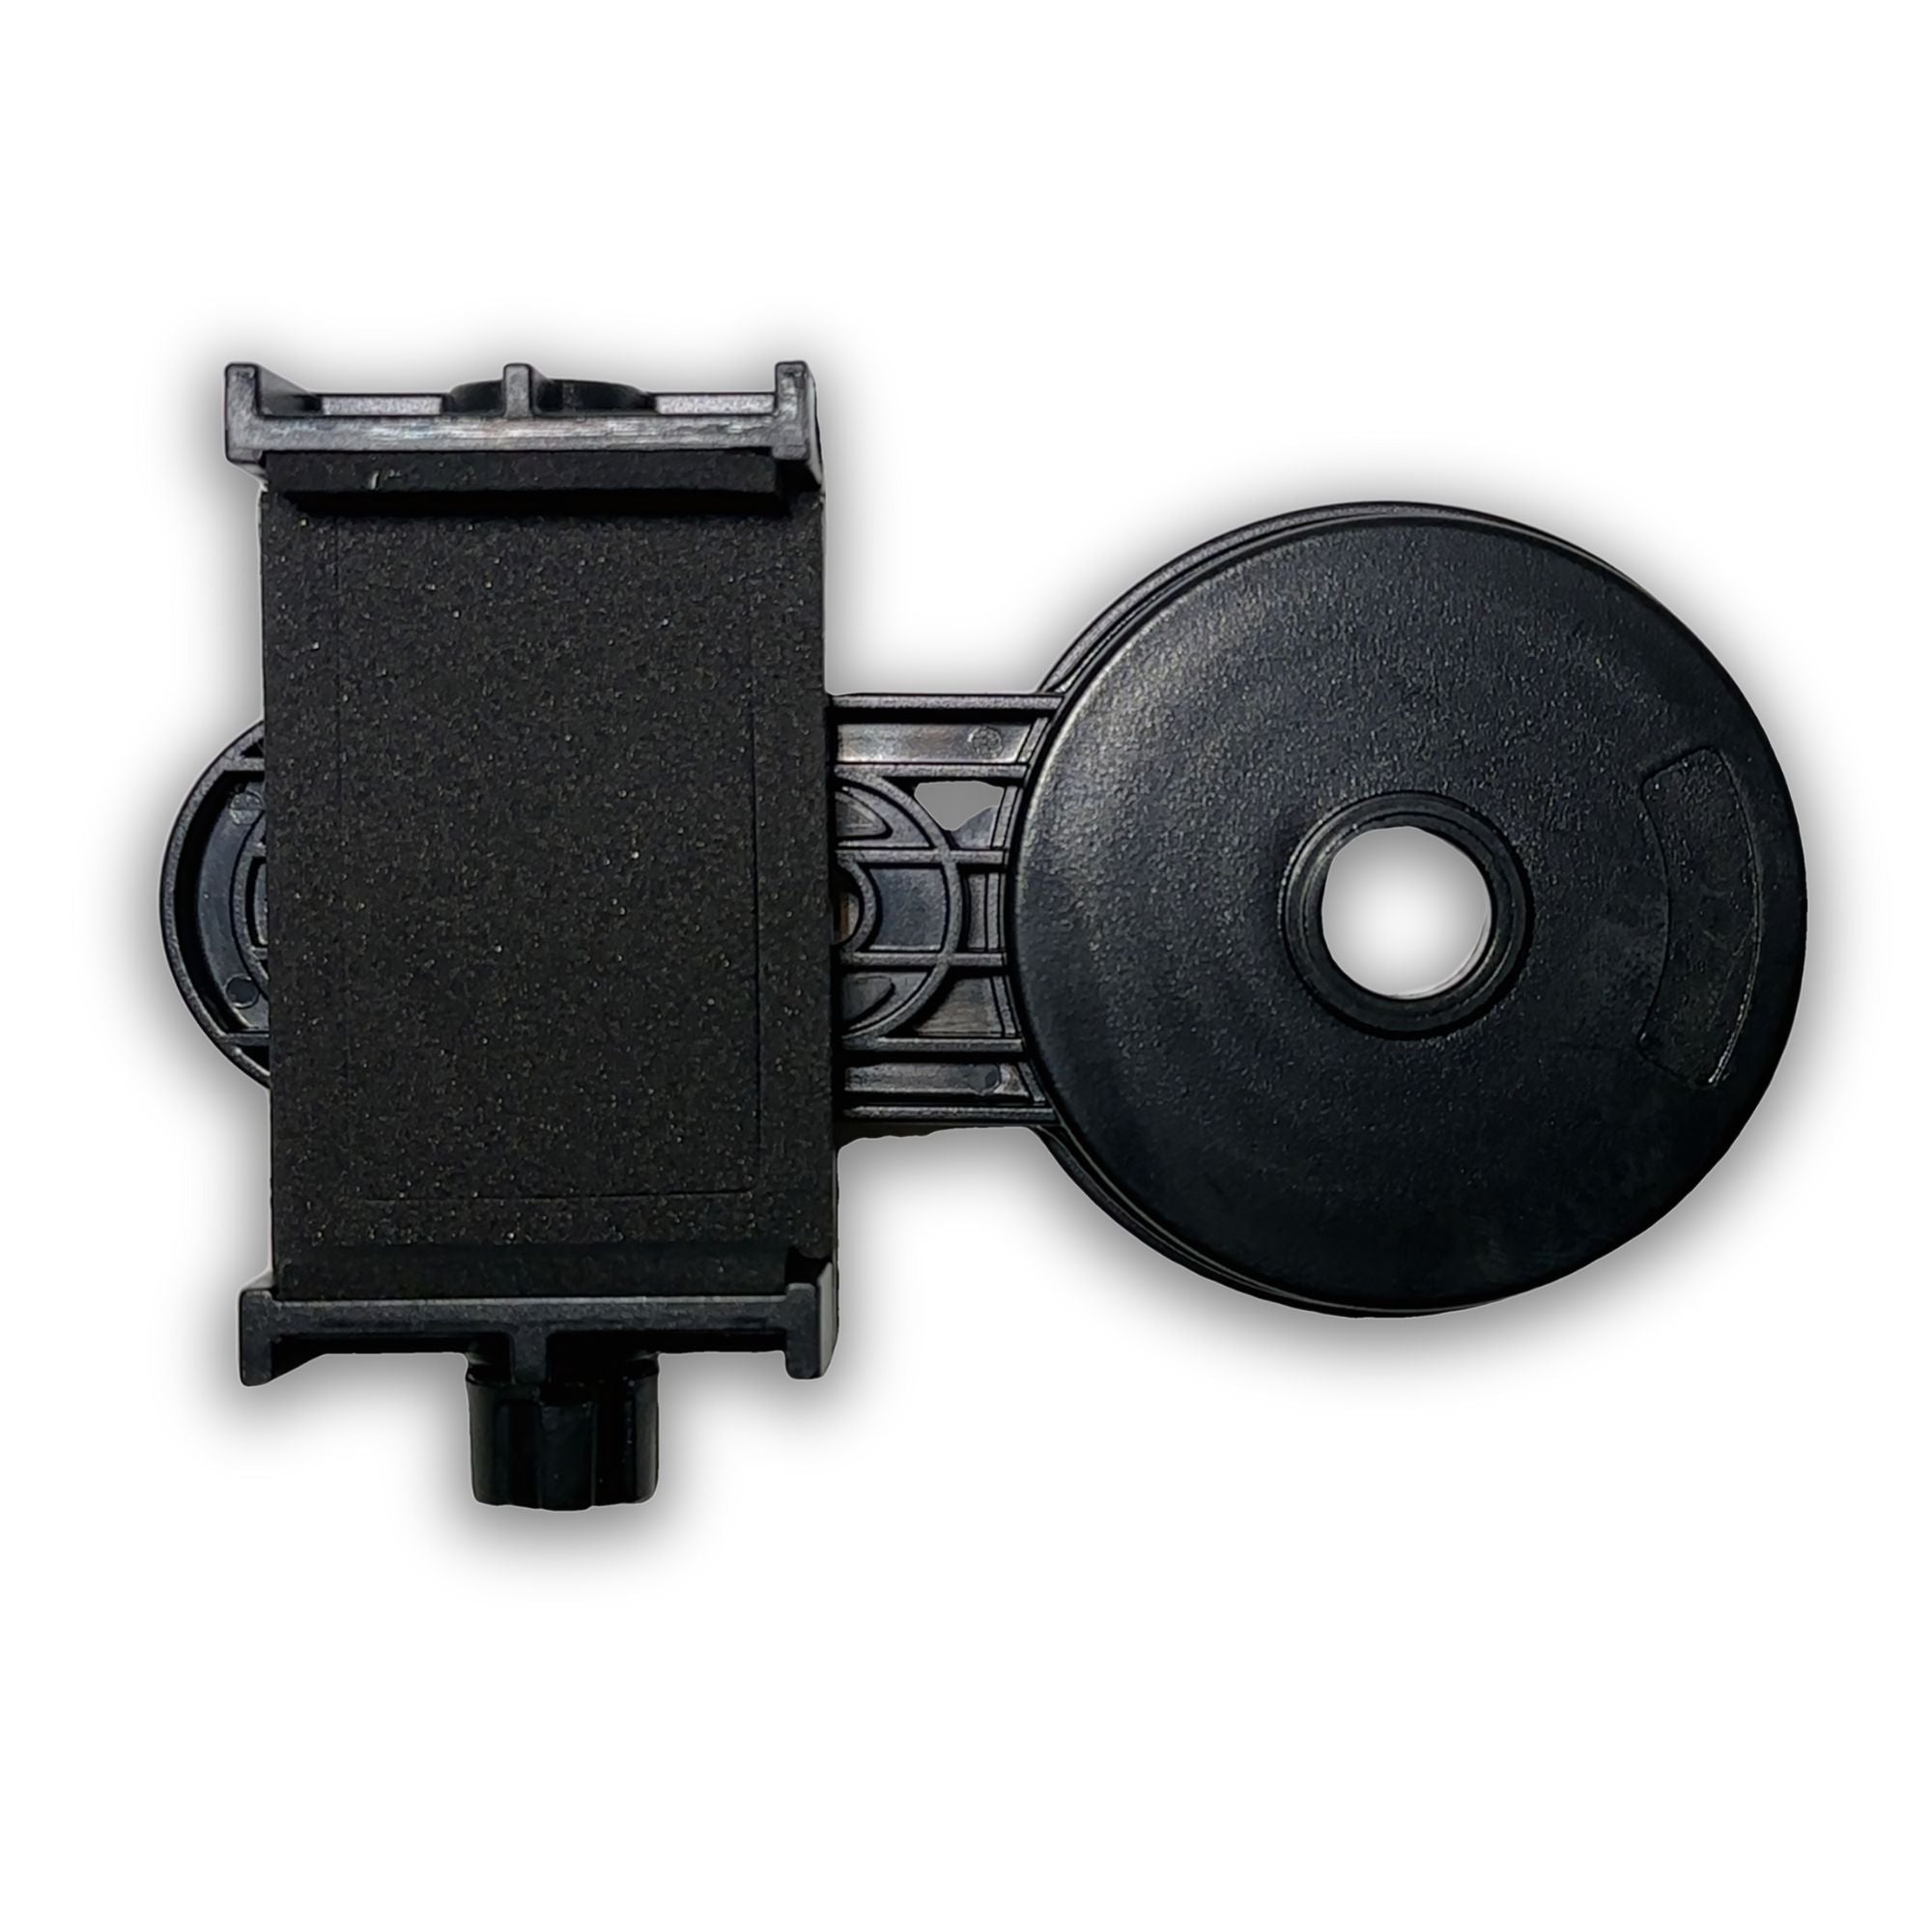 Базовий тримач телефону для мікроскопа, який дозволяє фотографувати дорогоцінні камені